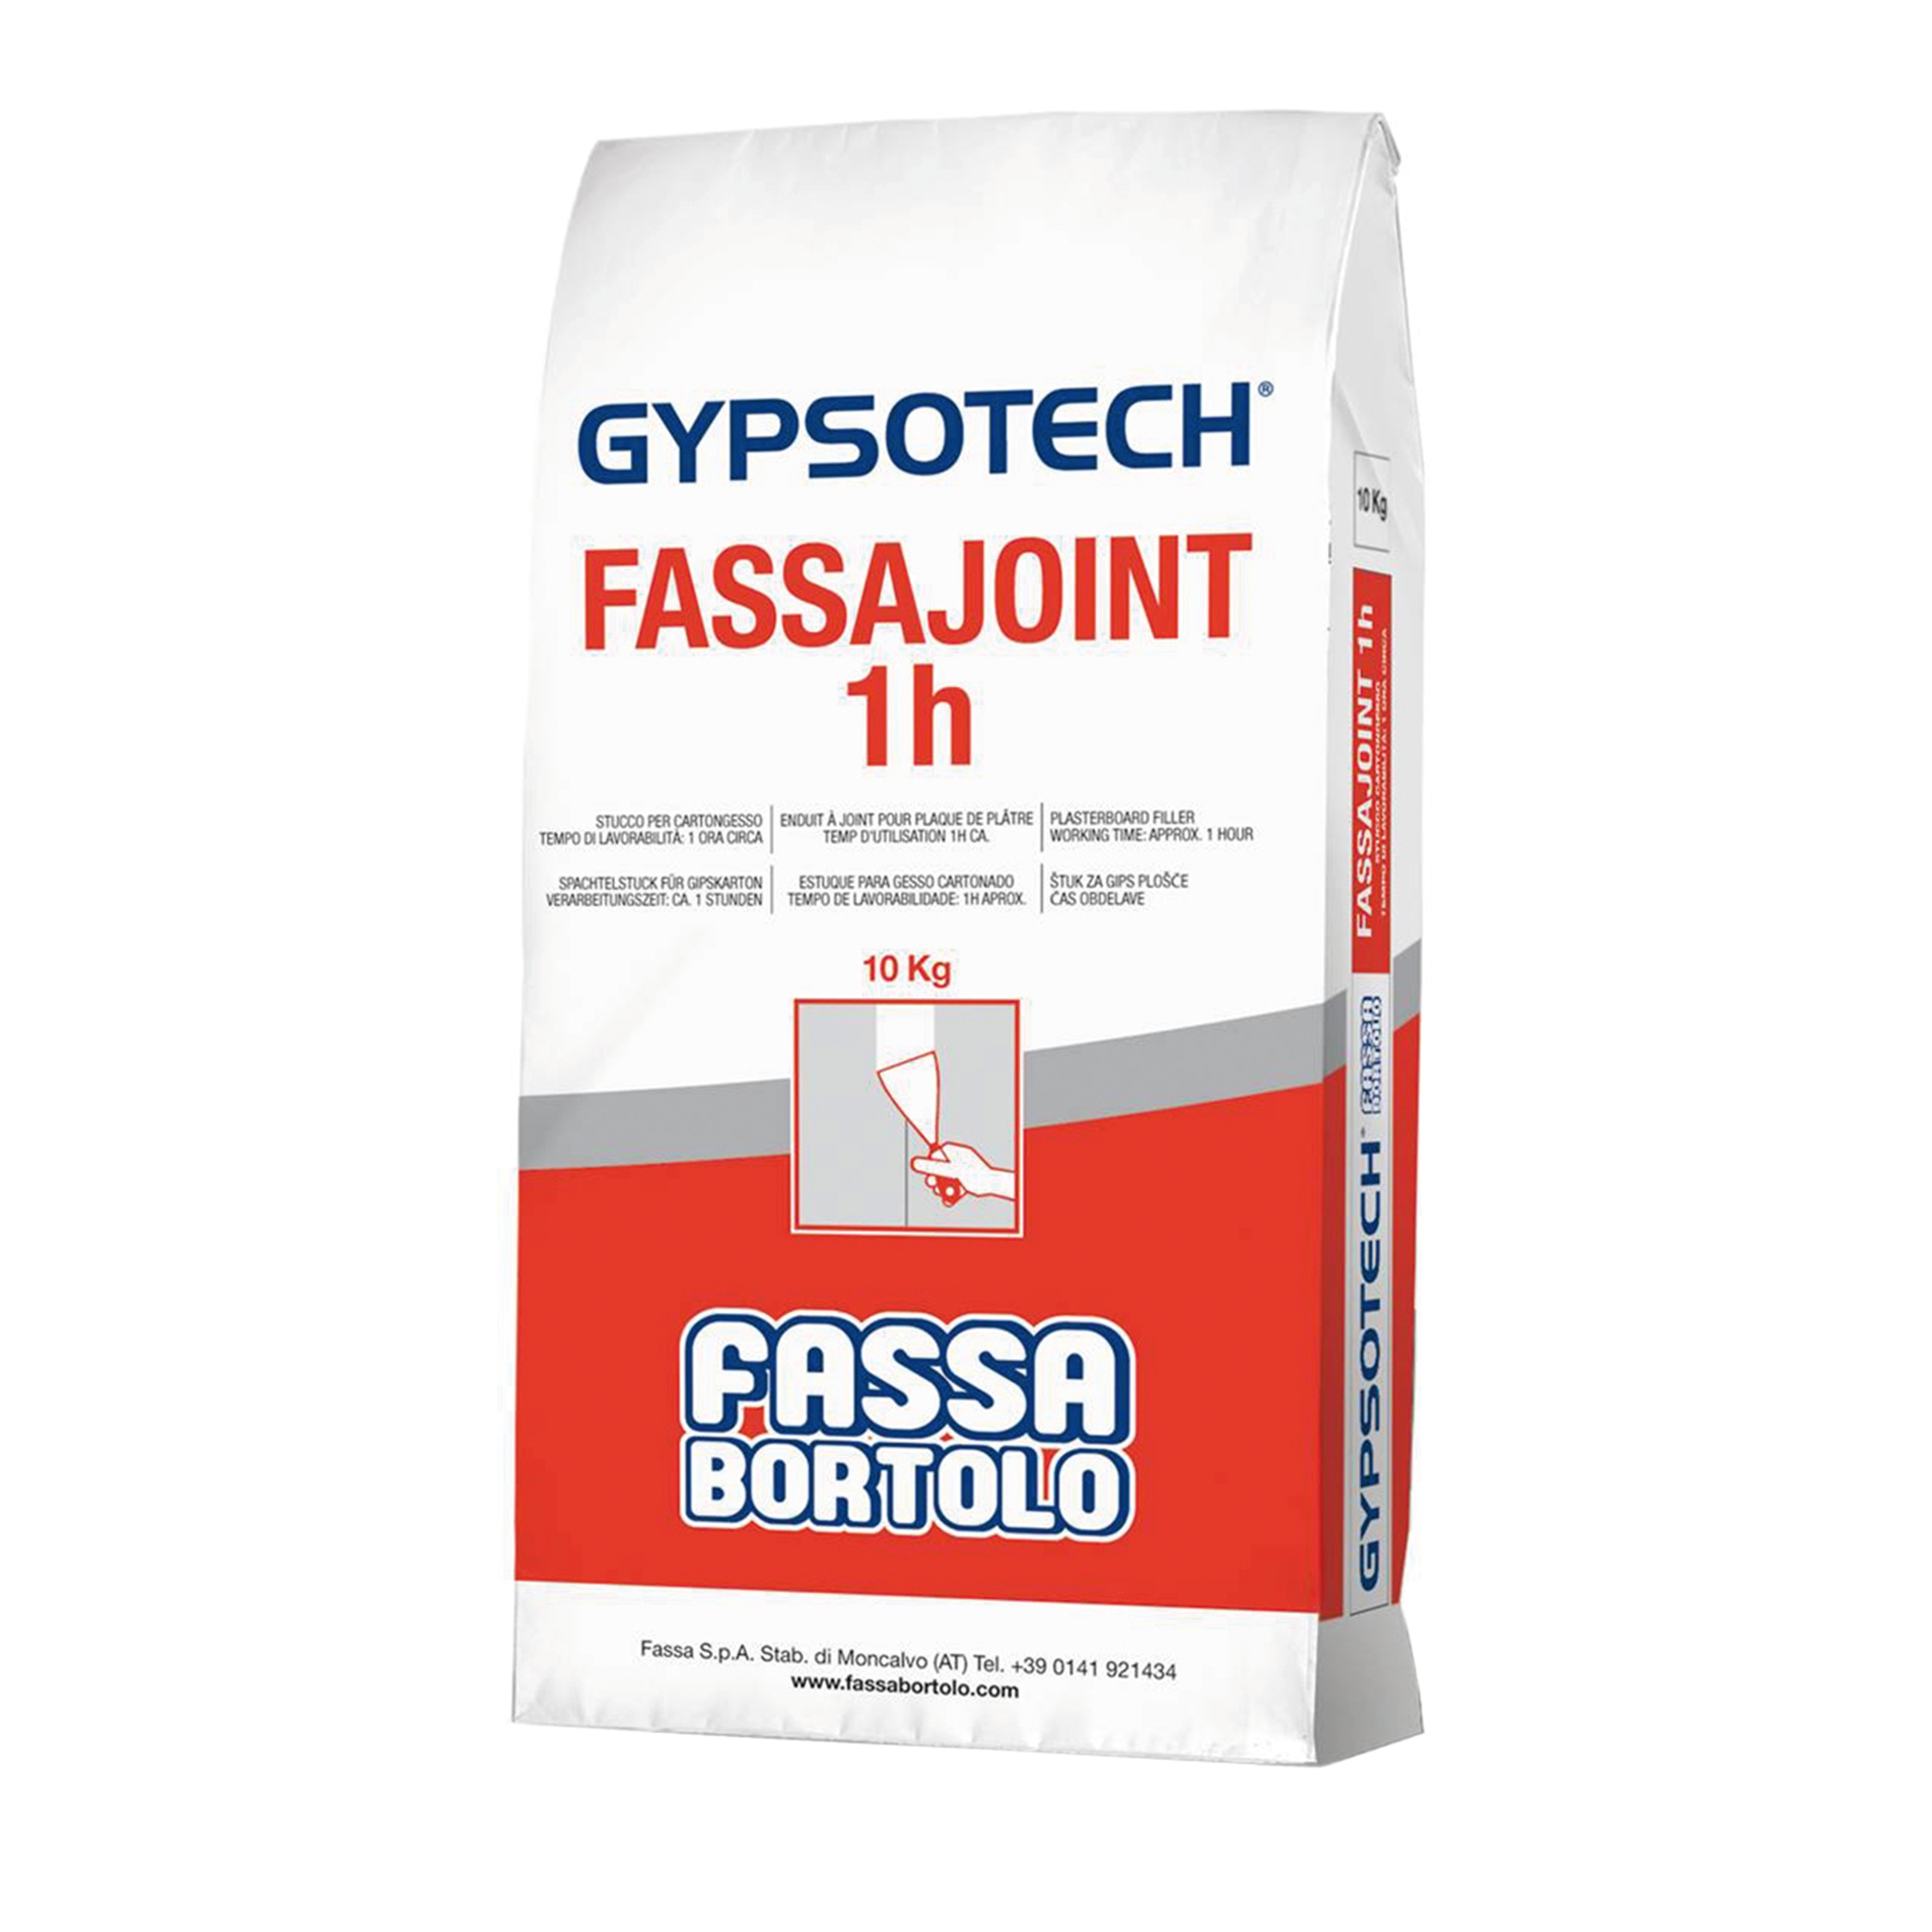 Stucco in polvere FASSA BORTOLO Fassajoint 1H 10 kg - 1